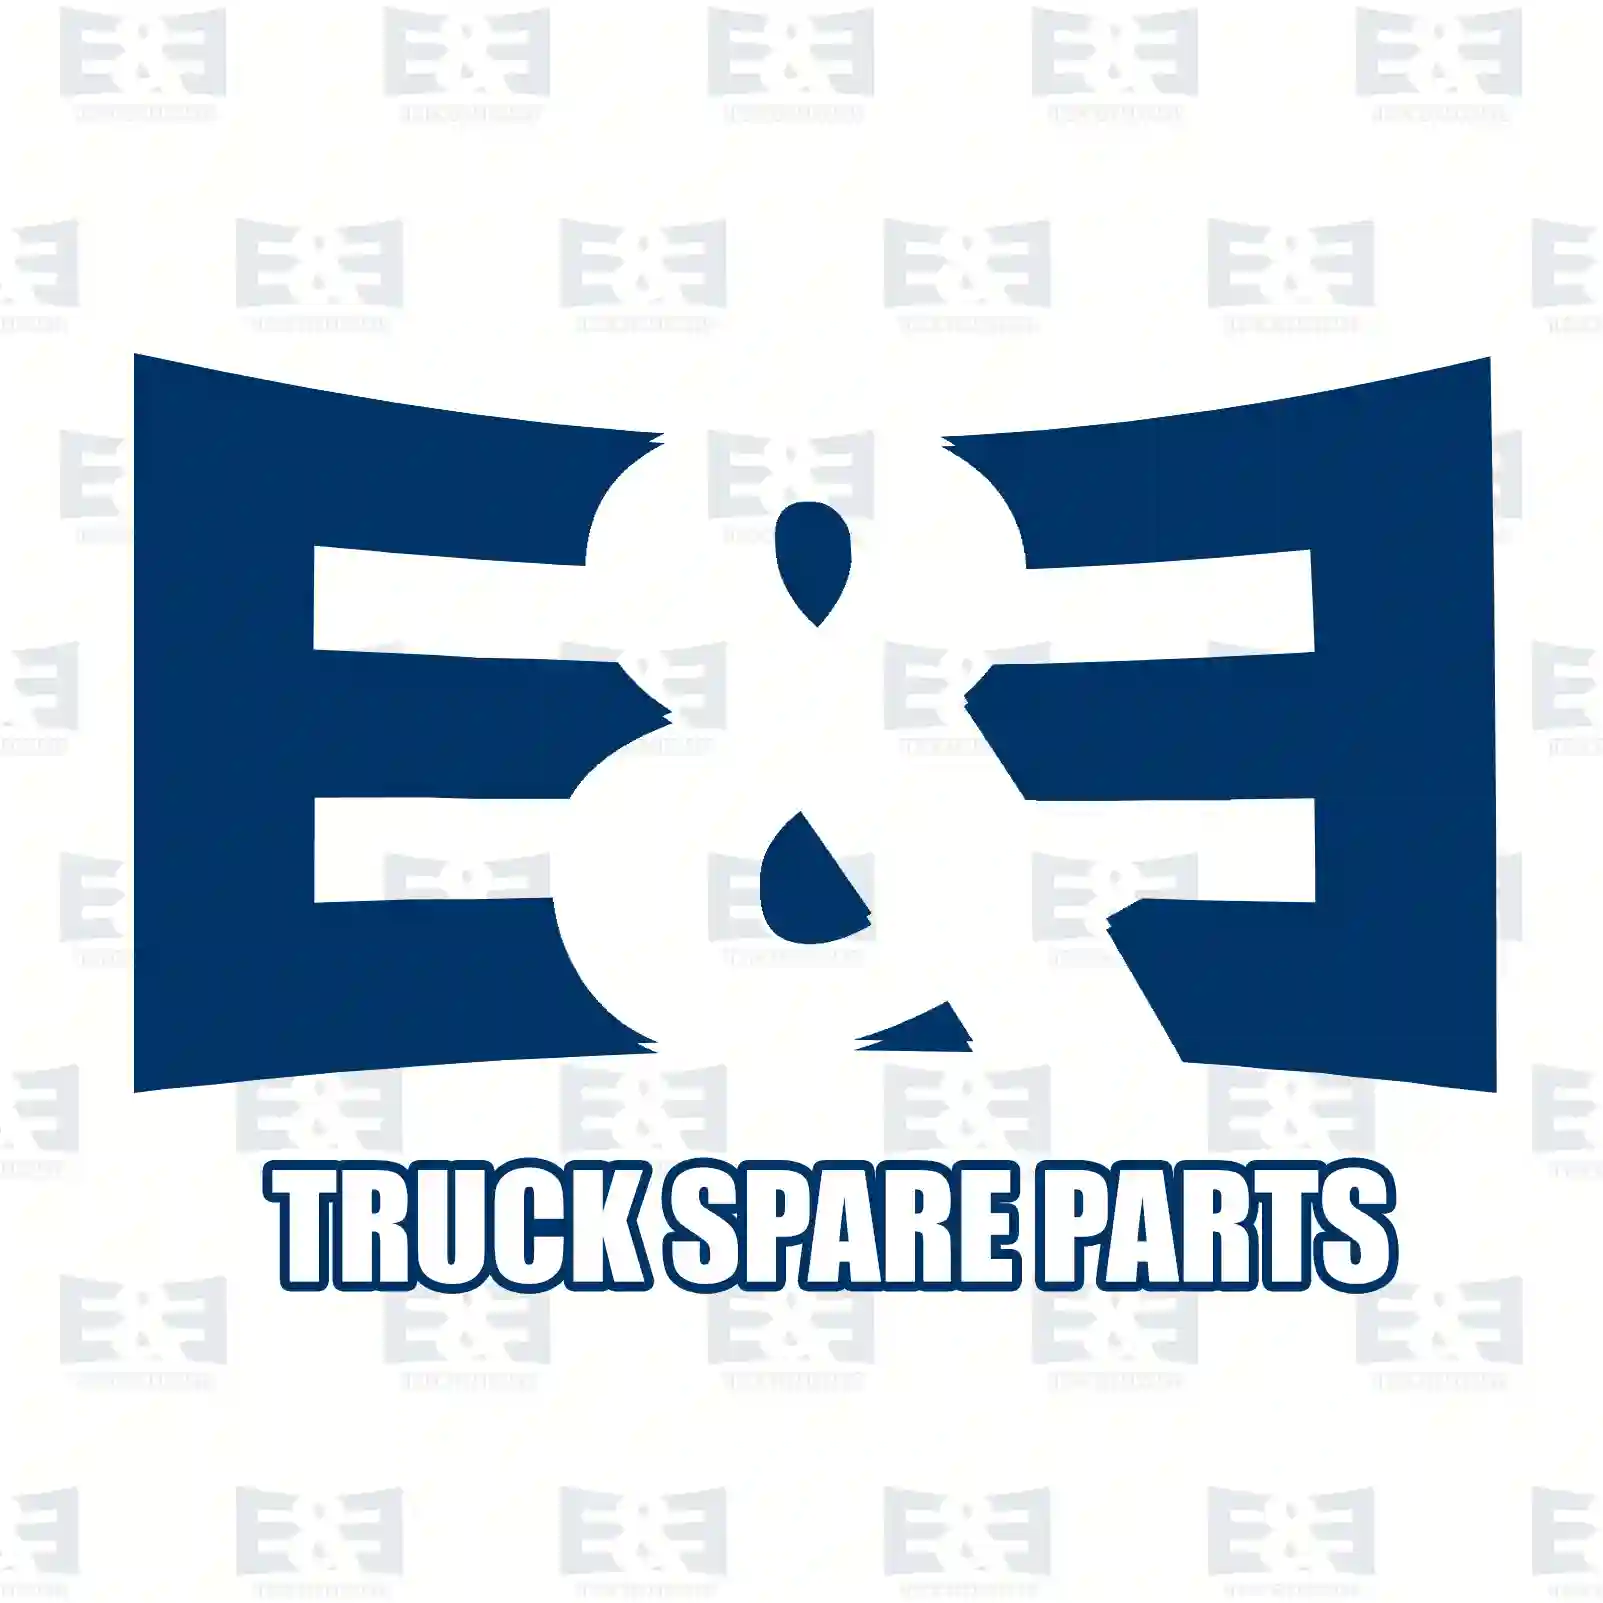 O-ring, 2E2285284, 06569363033, 1331914, ZG02866-0008, ||  2E2285284 E&E Truck Spare Parts | Truck Spare Parts, Auotomotive Spare Parts O-ring, 2E2285284, 06569363033, 1331914, ZG02866-0008, ||  2E2285284 E&E Truck Spare Parts | Truck Spare Parts, Auotomotive Spare Parts